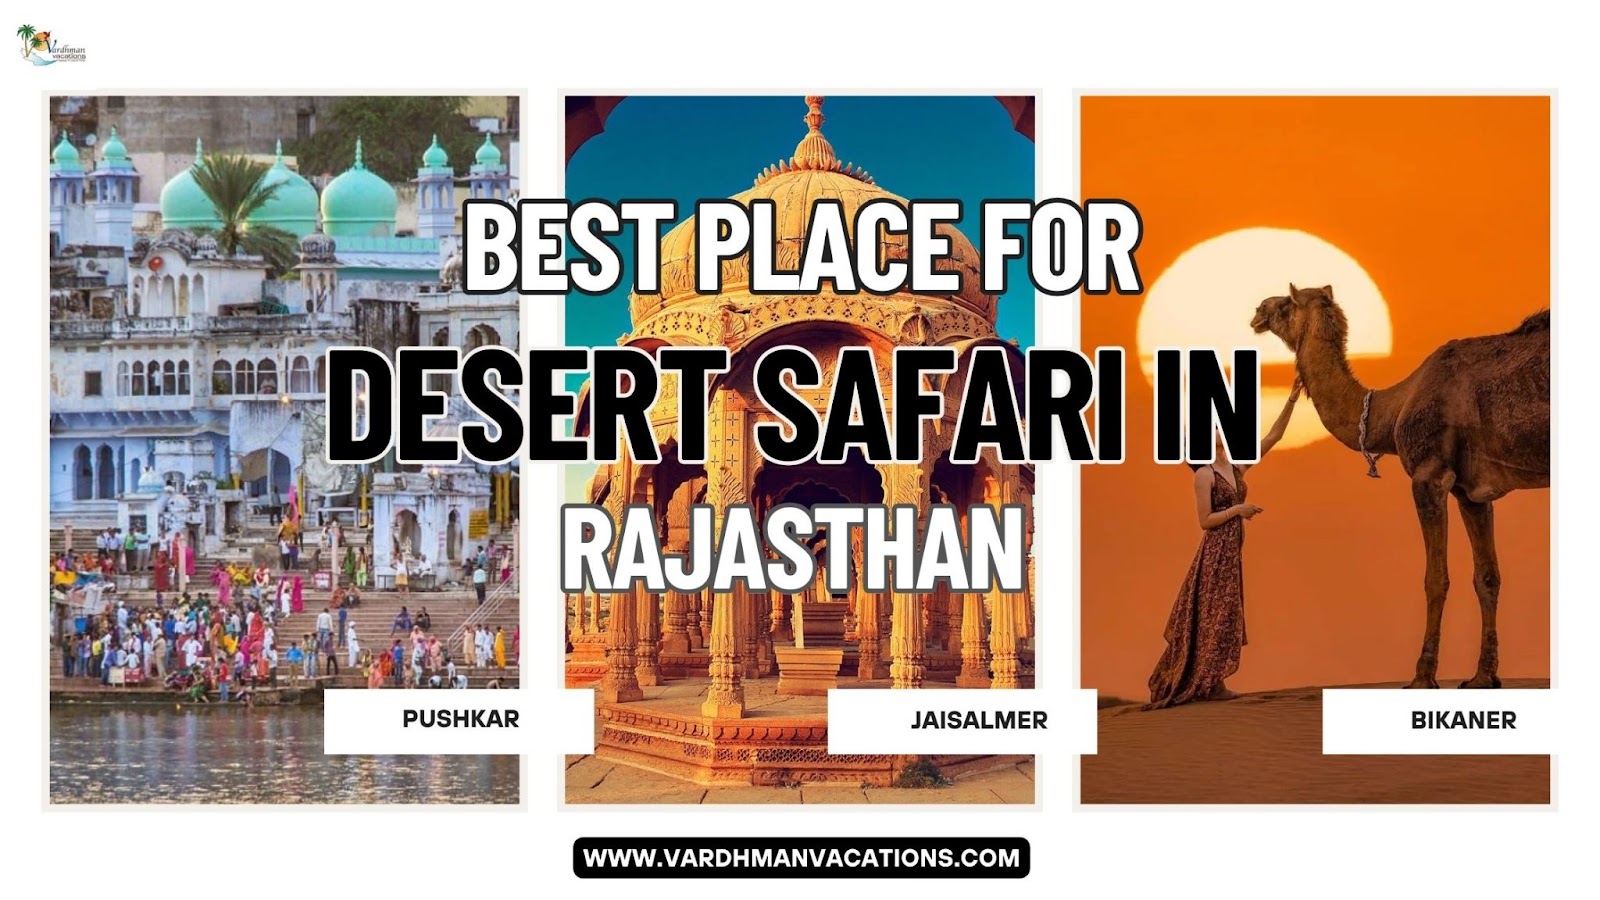 desert Safari in Rajasthan